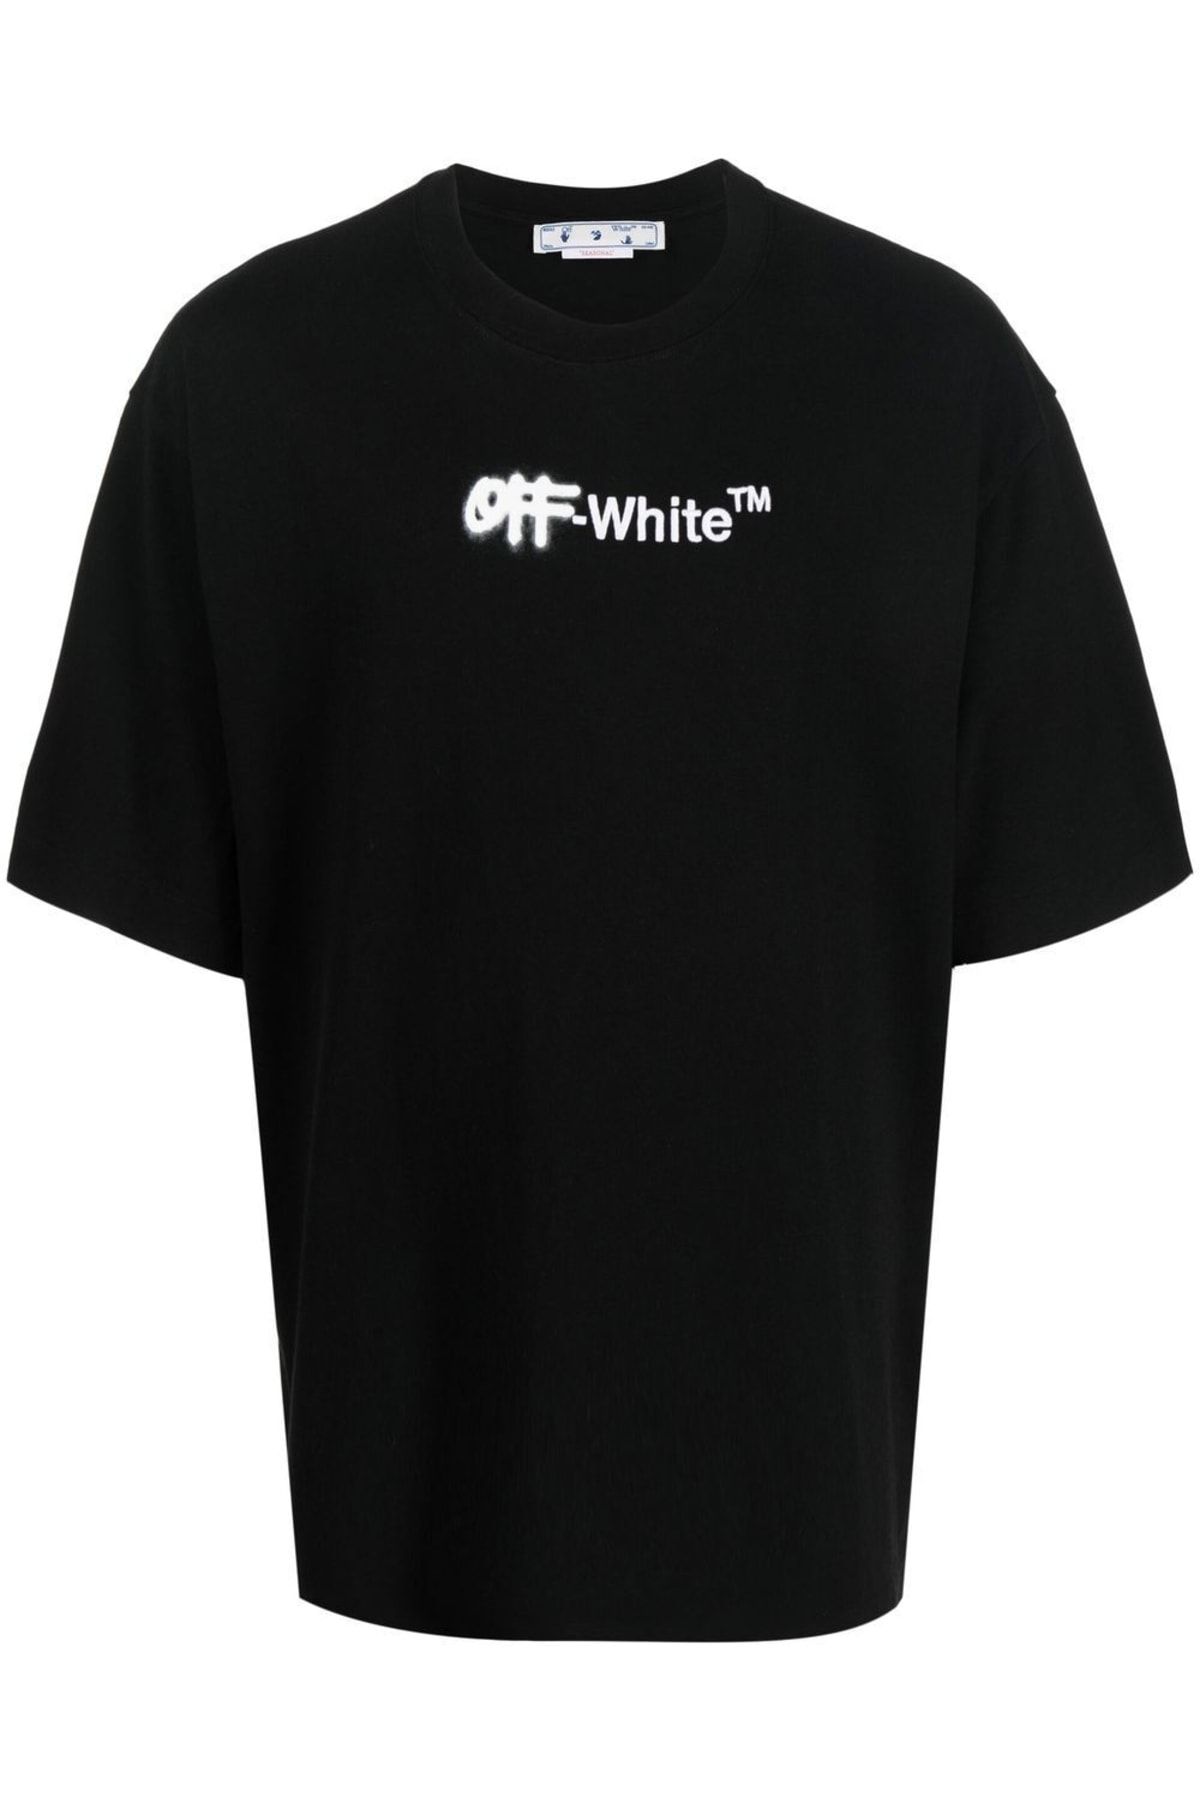 Dsquared Off-white Logo Baskı Ve Işlemeli Erkek Siyah T-shirt